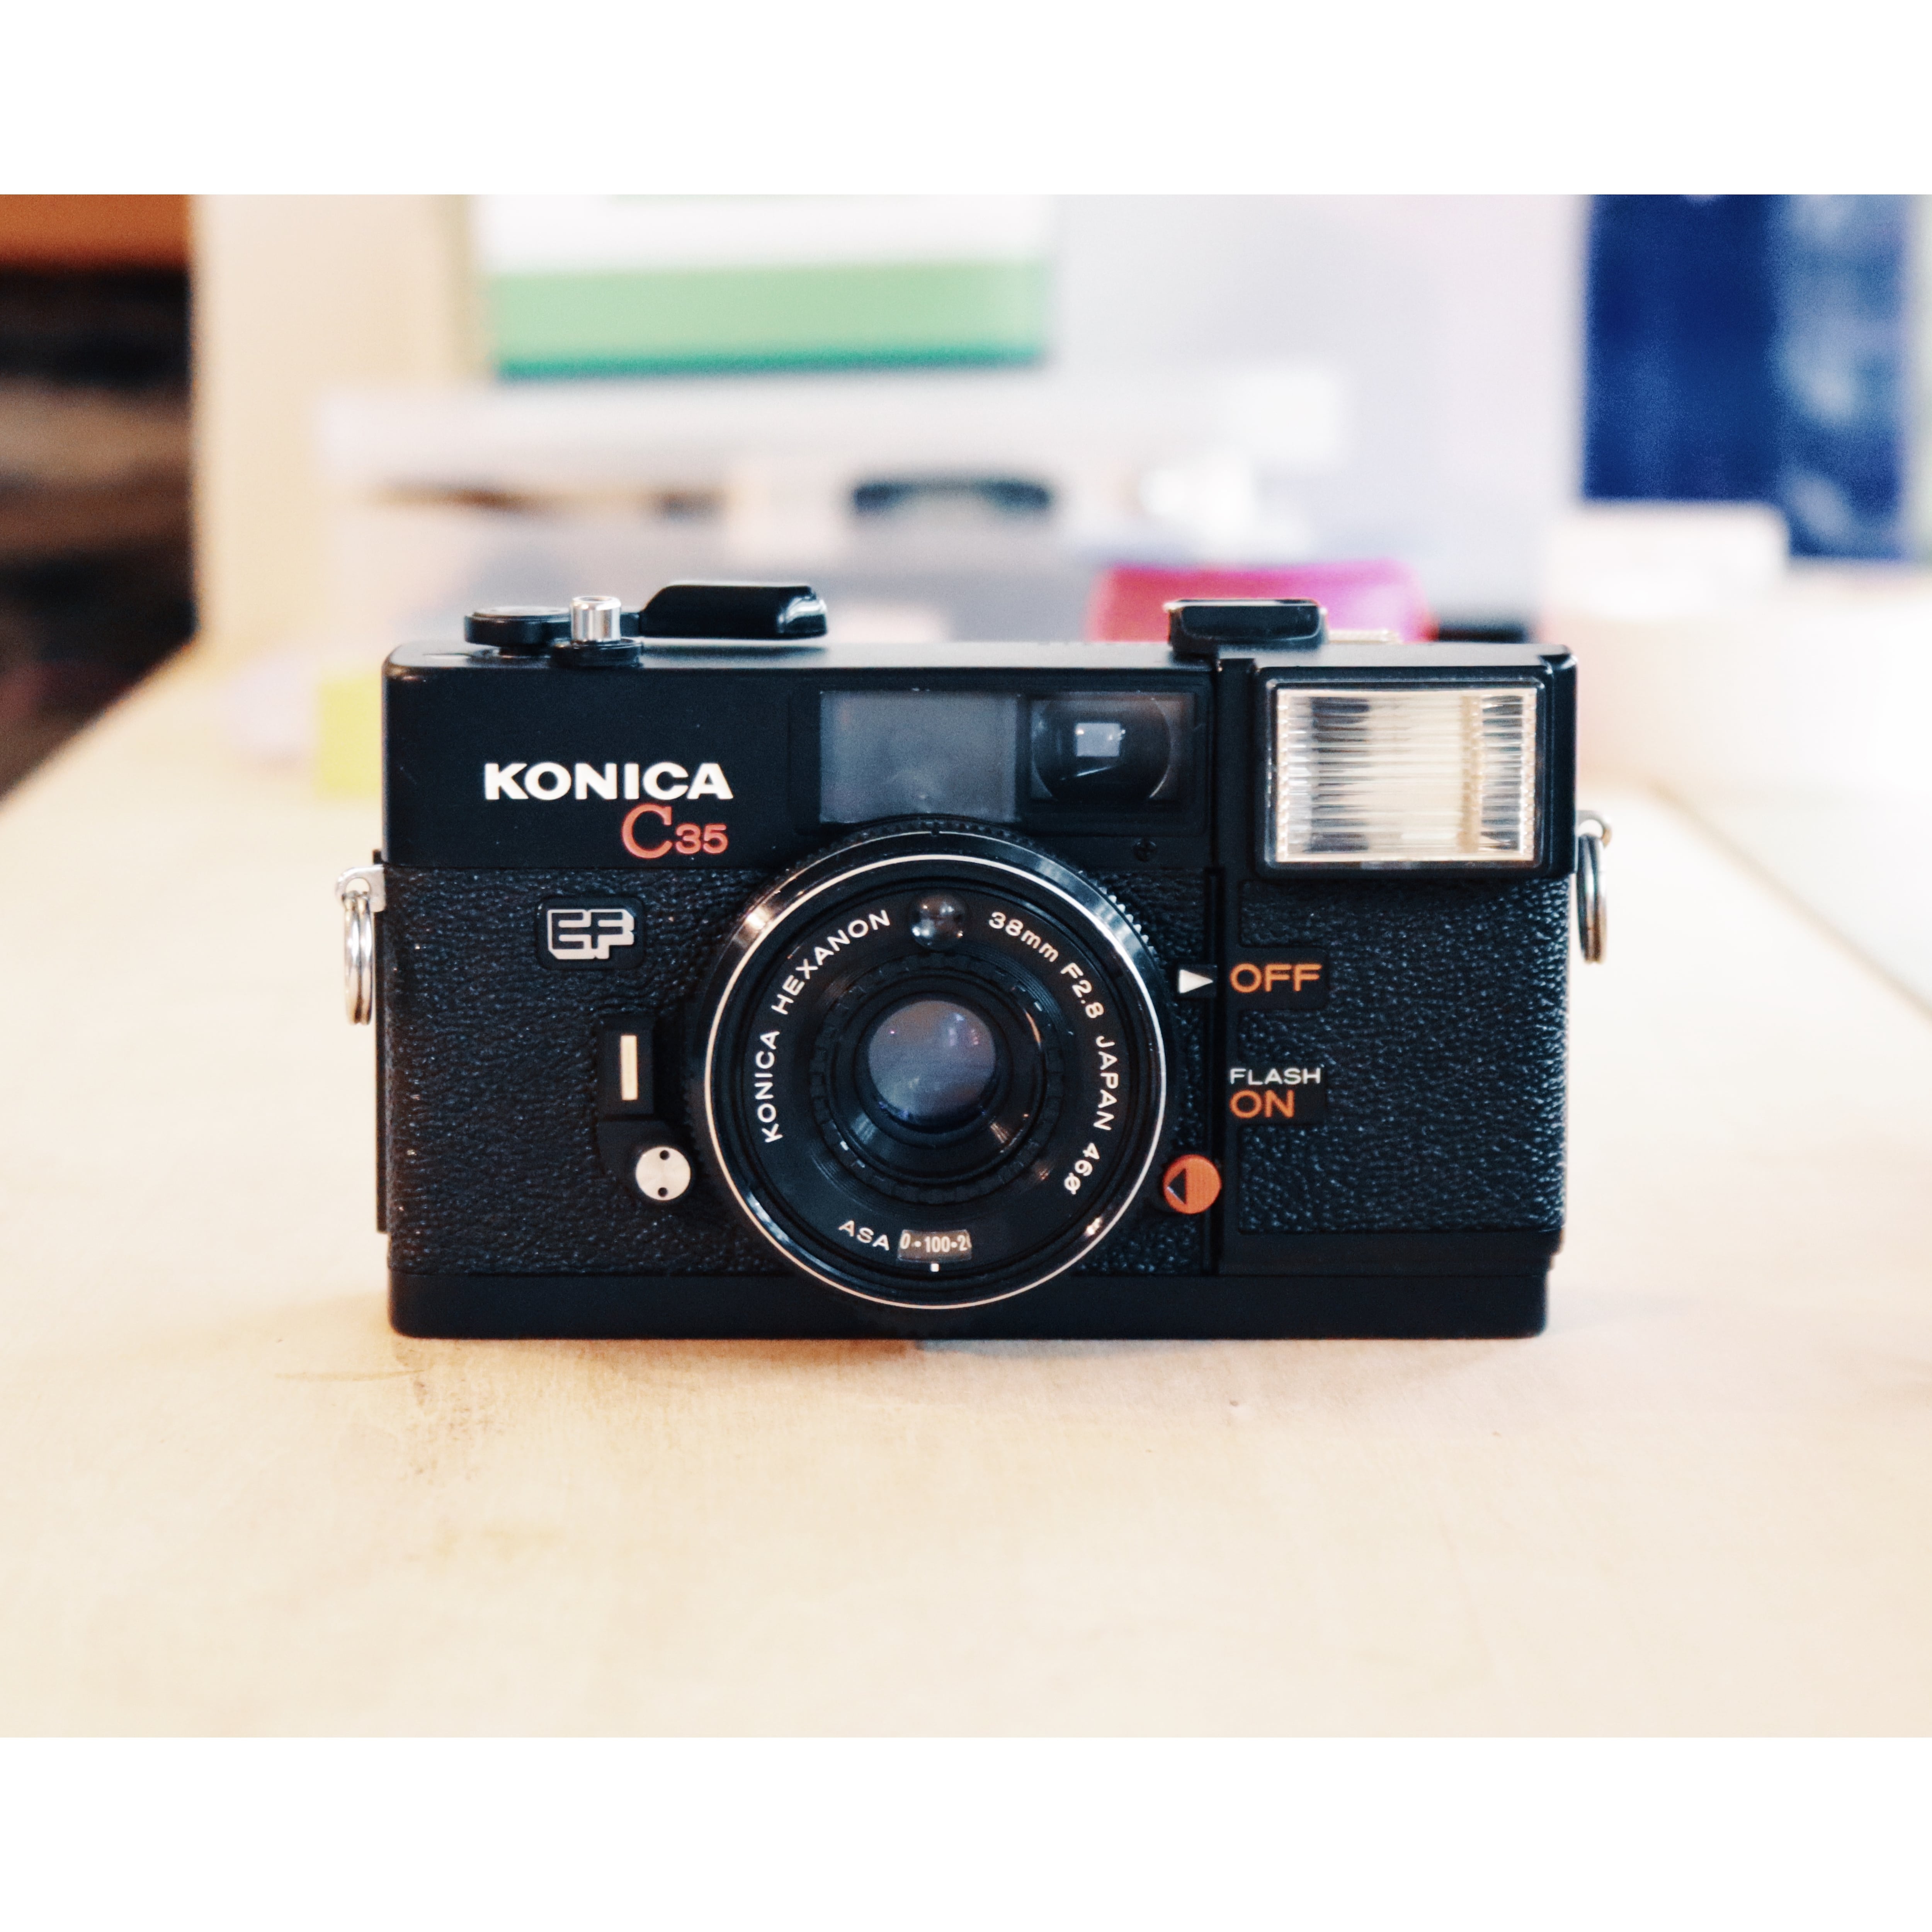 フィルムカメラ Konica C35 EF ピッカリコニカ - フィルムカメラ